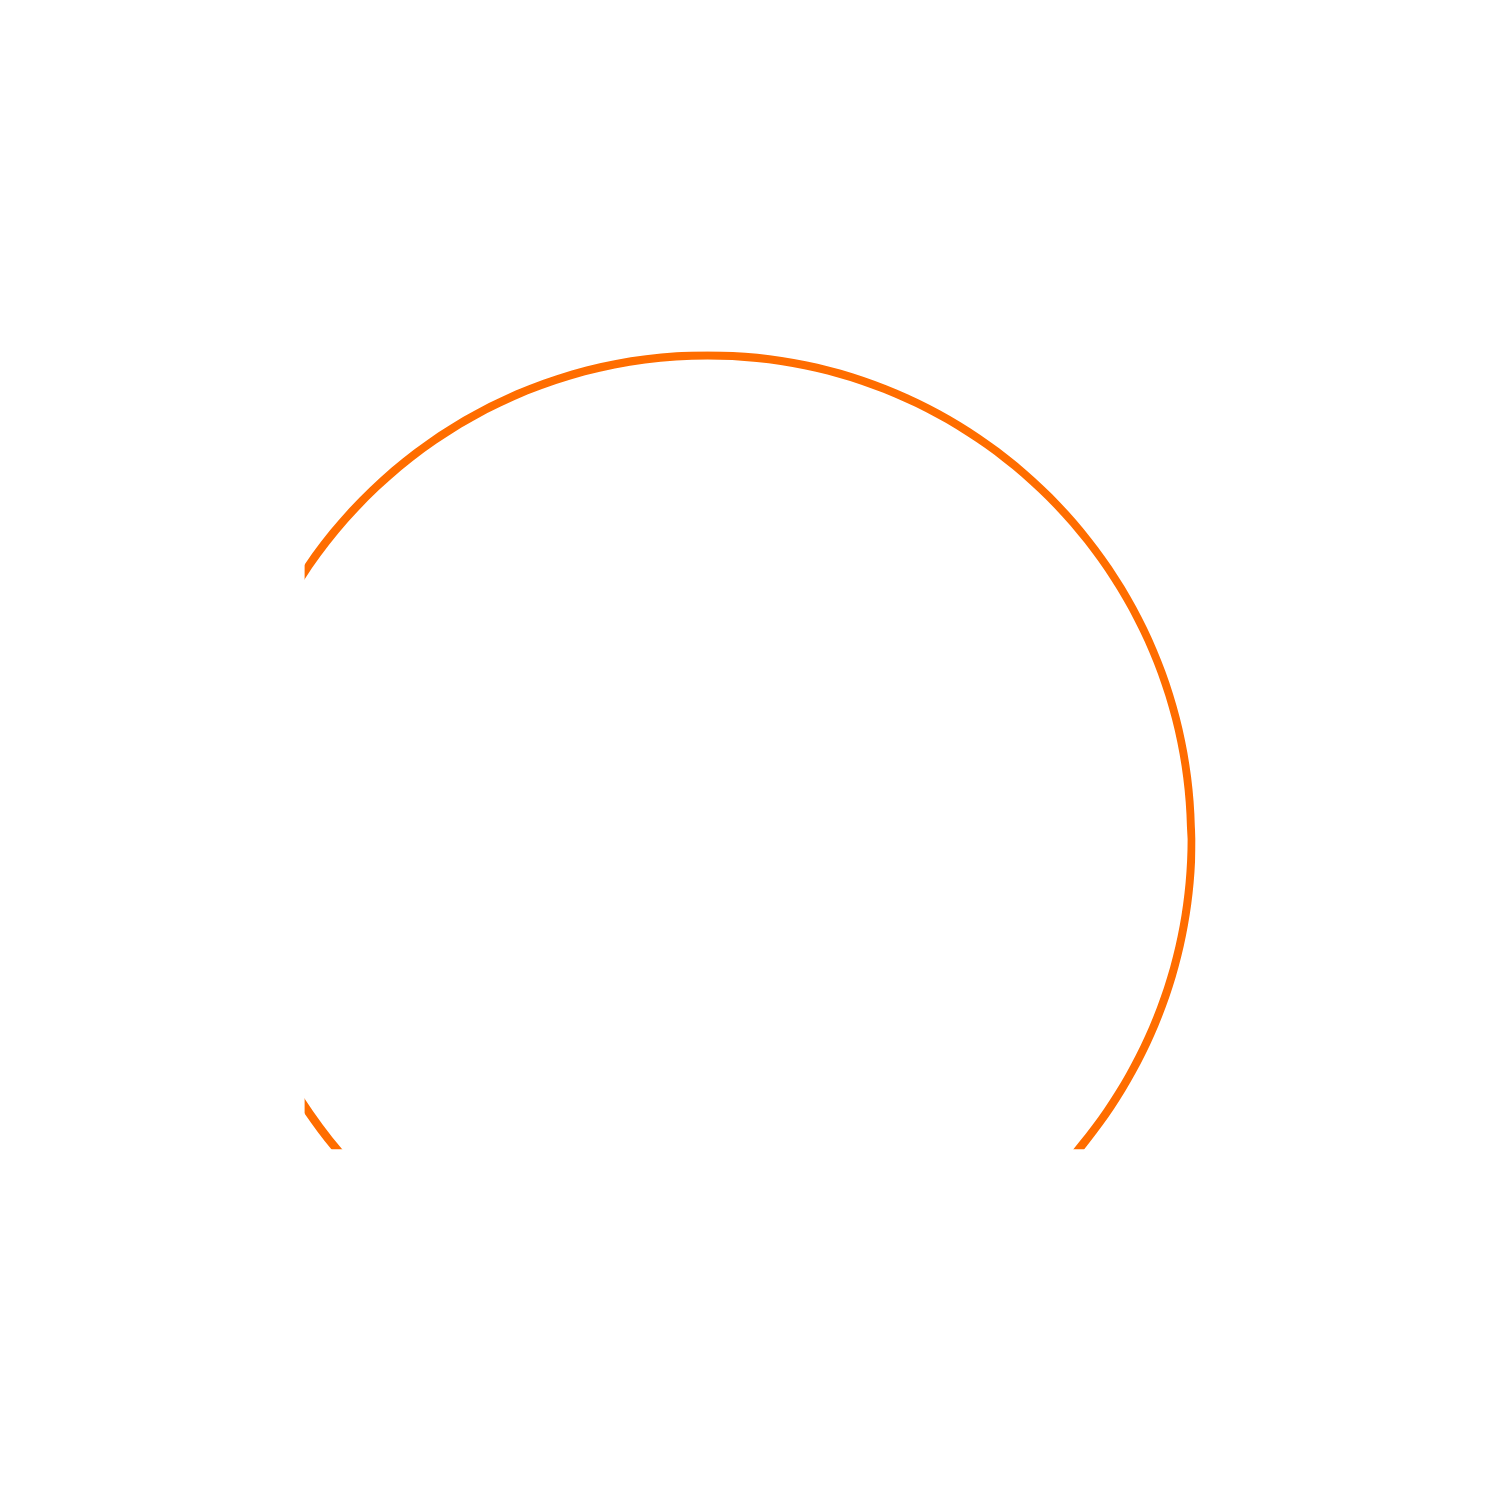 22 commune